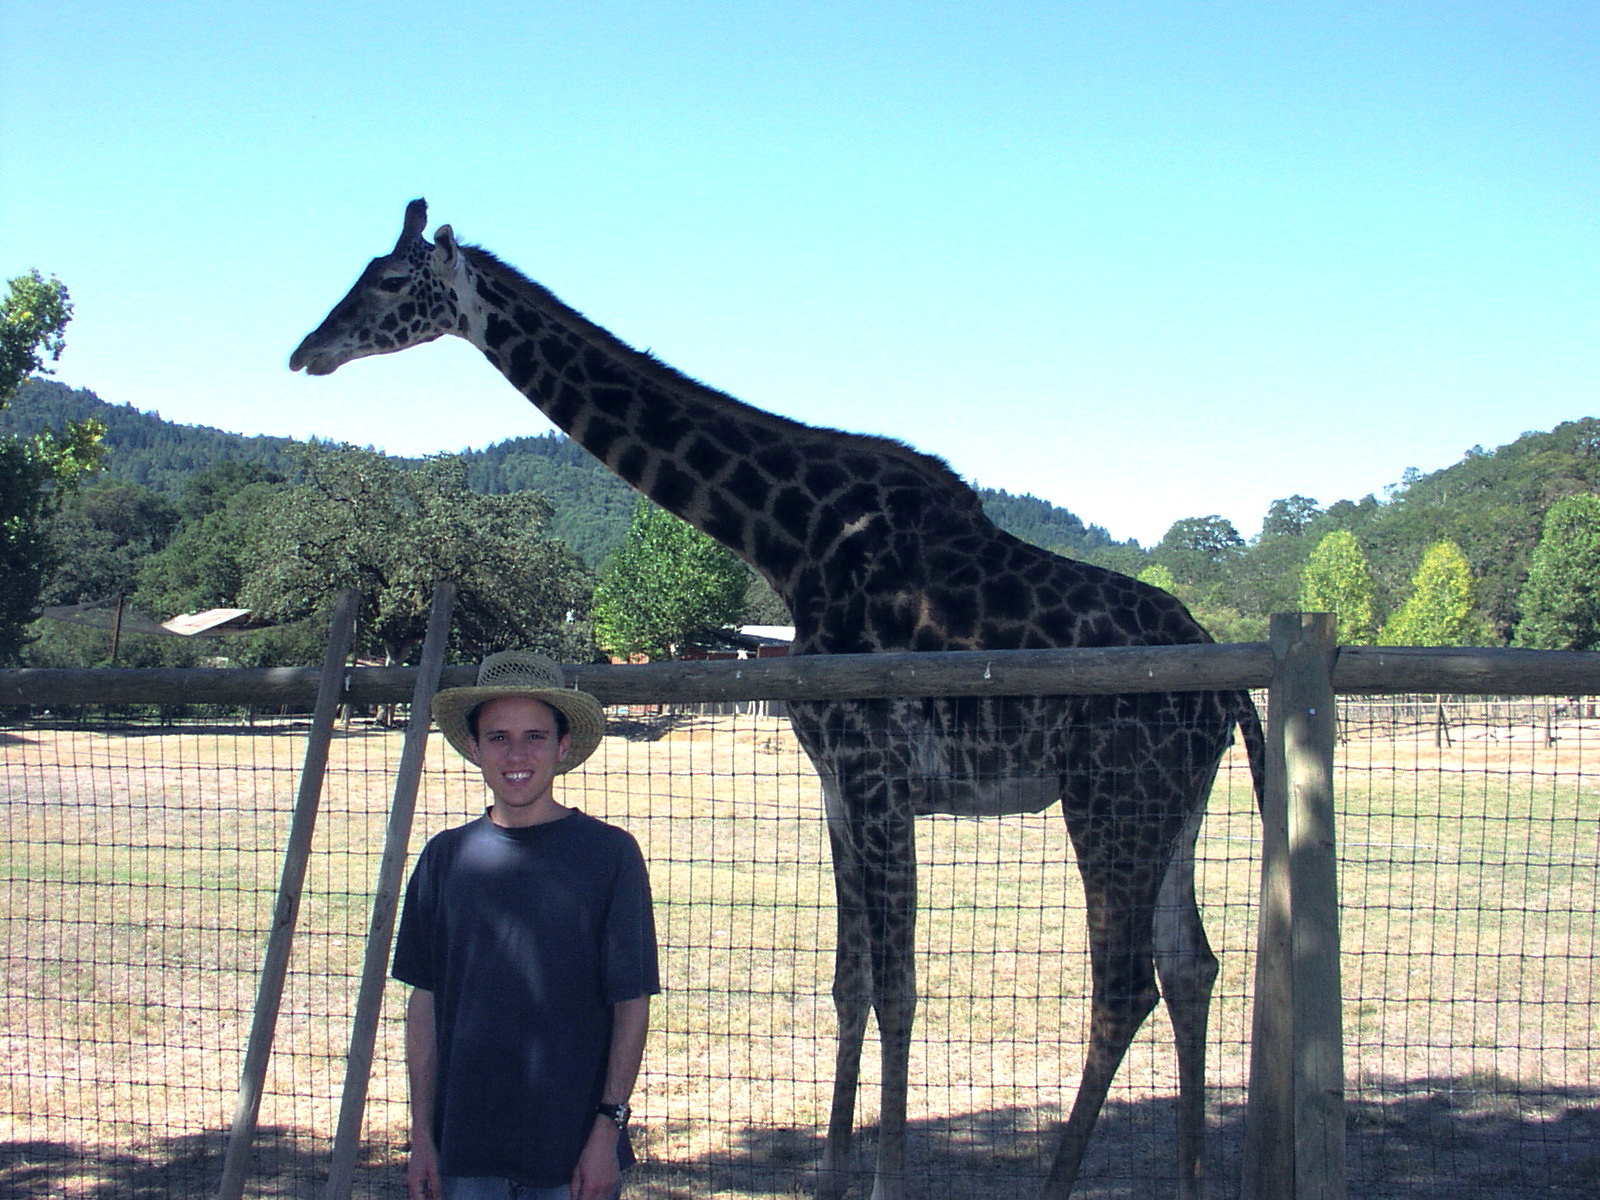 Edwin and Giraffe